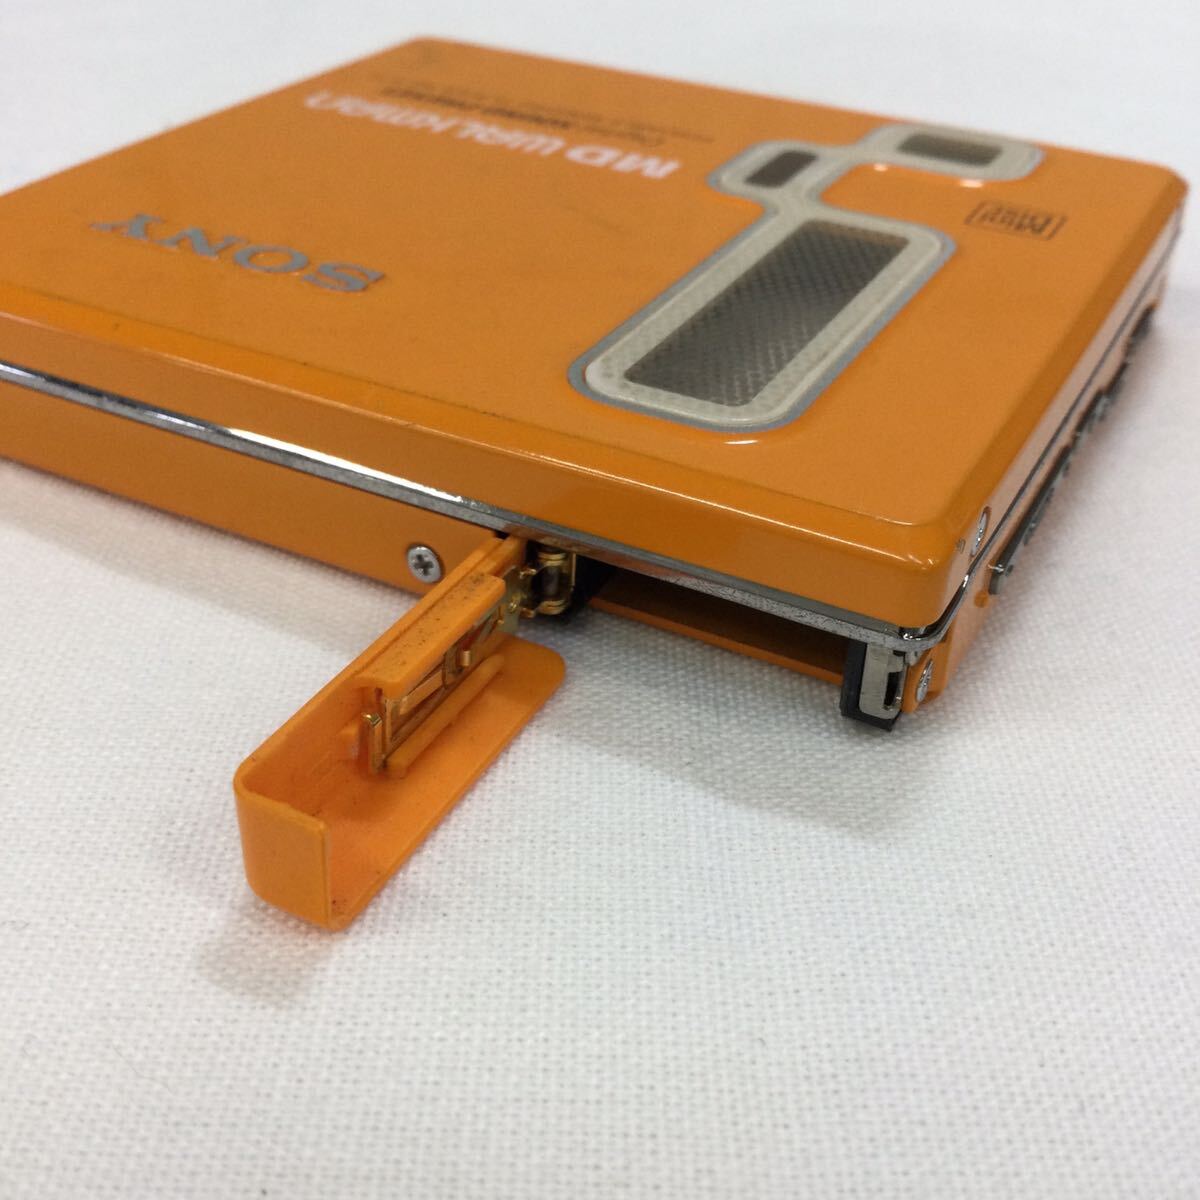 &[SONY/ Sony ]MD Walkman MZ-E77 портативный Mini диск плеер orange RM-MC11EL работоспособность не проверялась электризация не проверка текущее состояние товар 